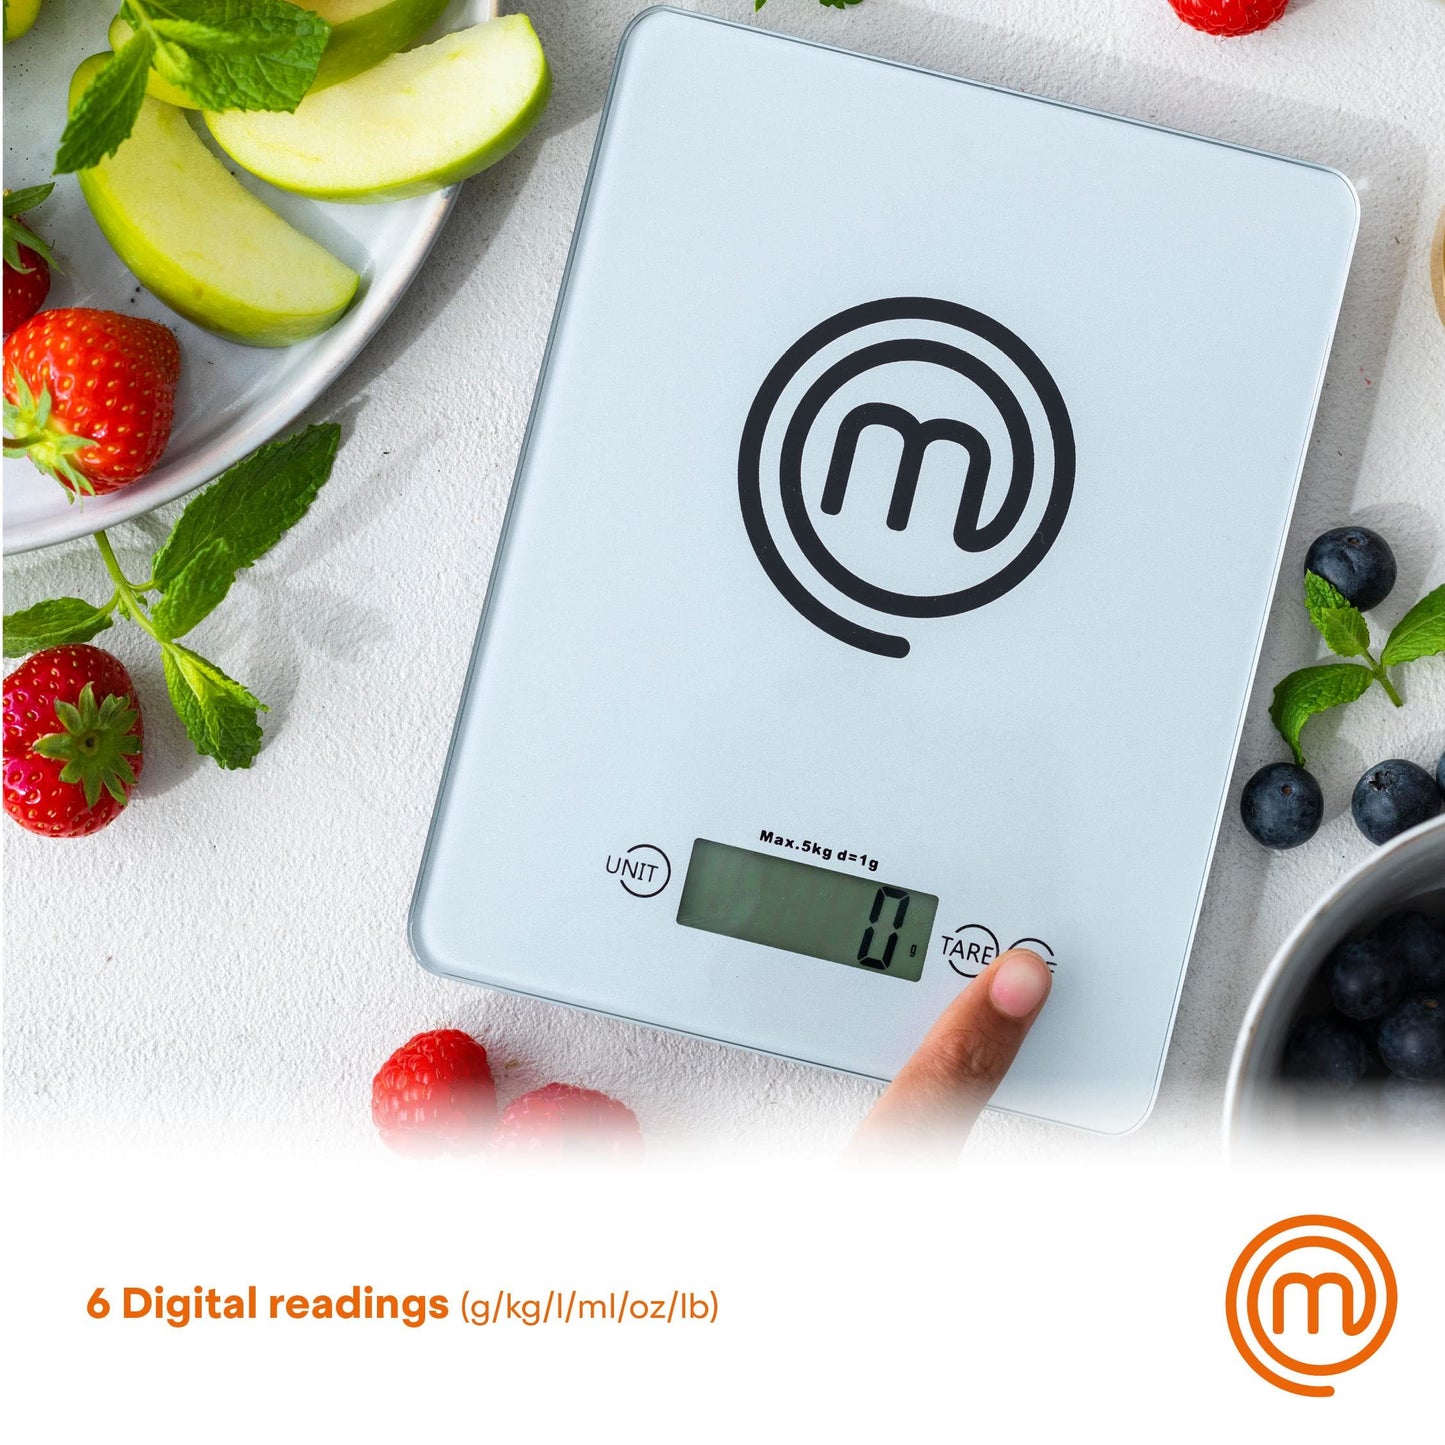 MasterChef Digital Kitchen Scales